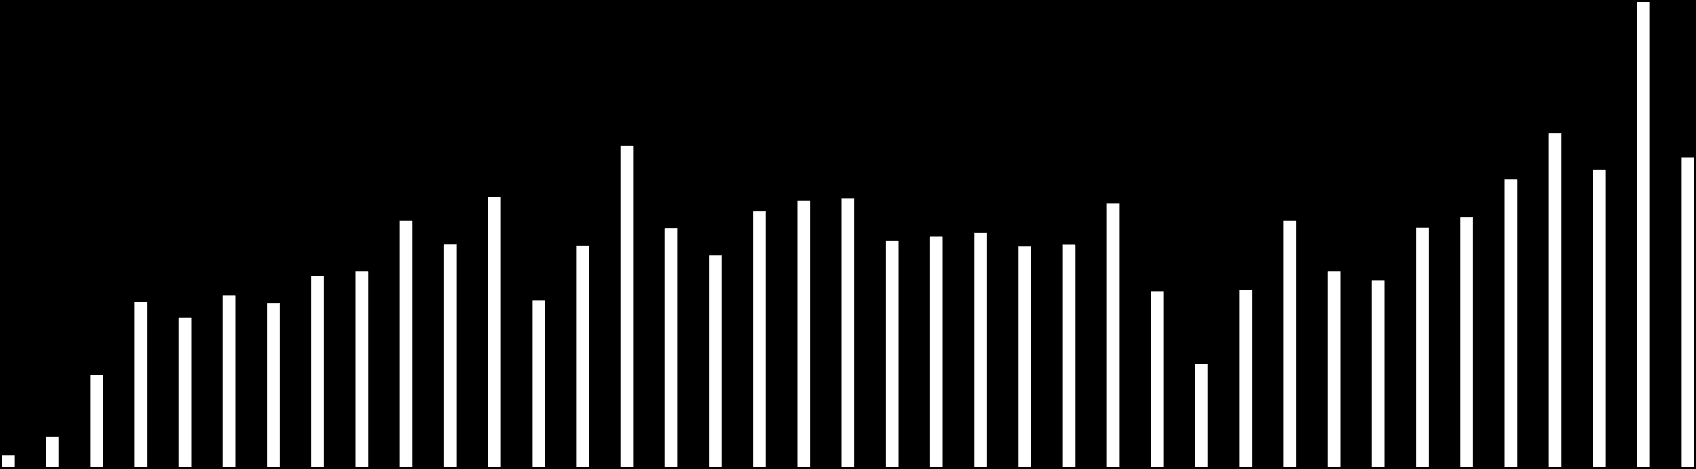 Desde el año 2000 los ingresos no petroleros son en promedio mayores a los del período 1971-1999. En el período 2007 a 2009 los ingresos no petroleros incrementan su importancia.